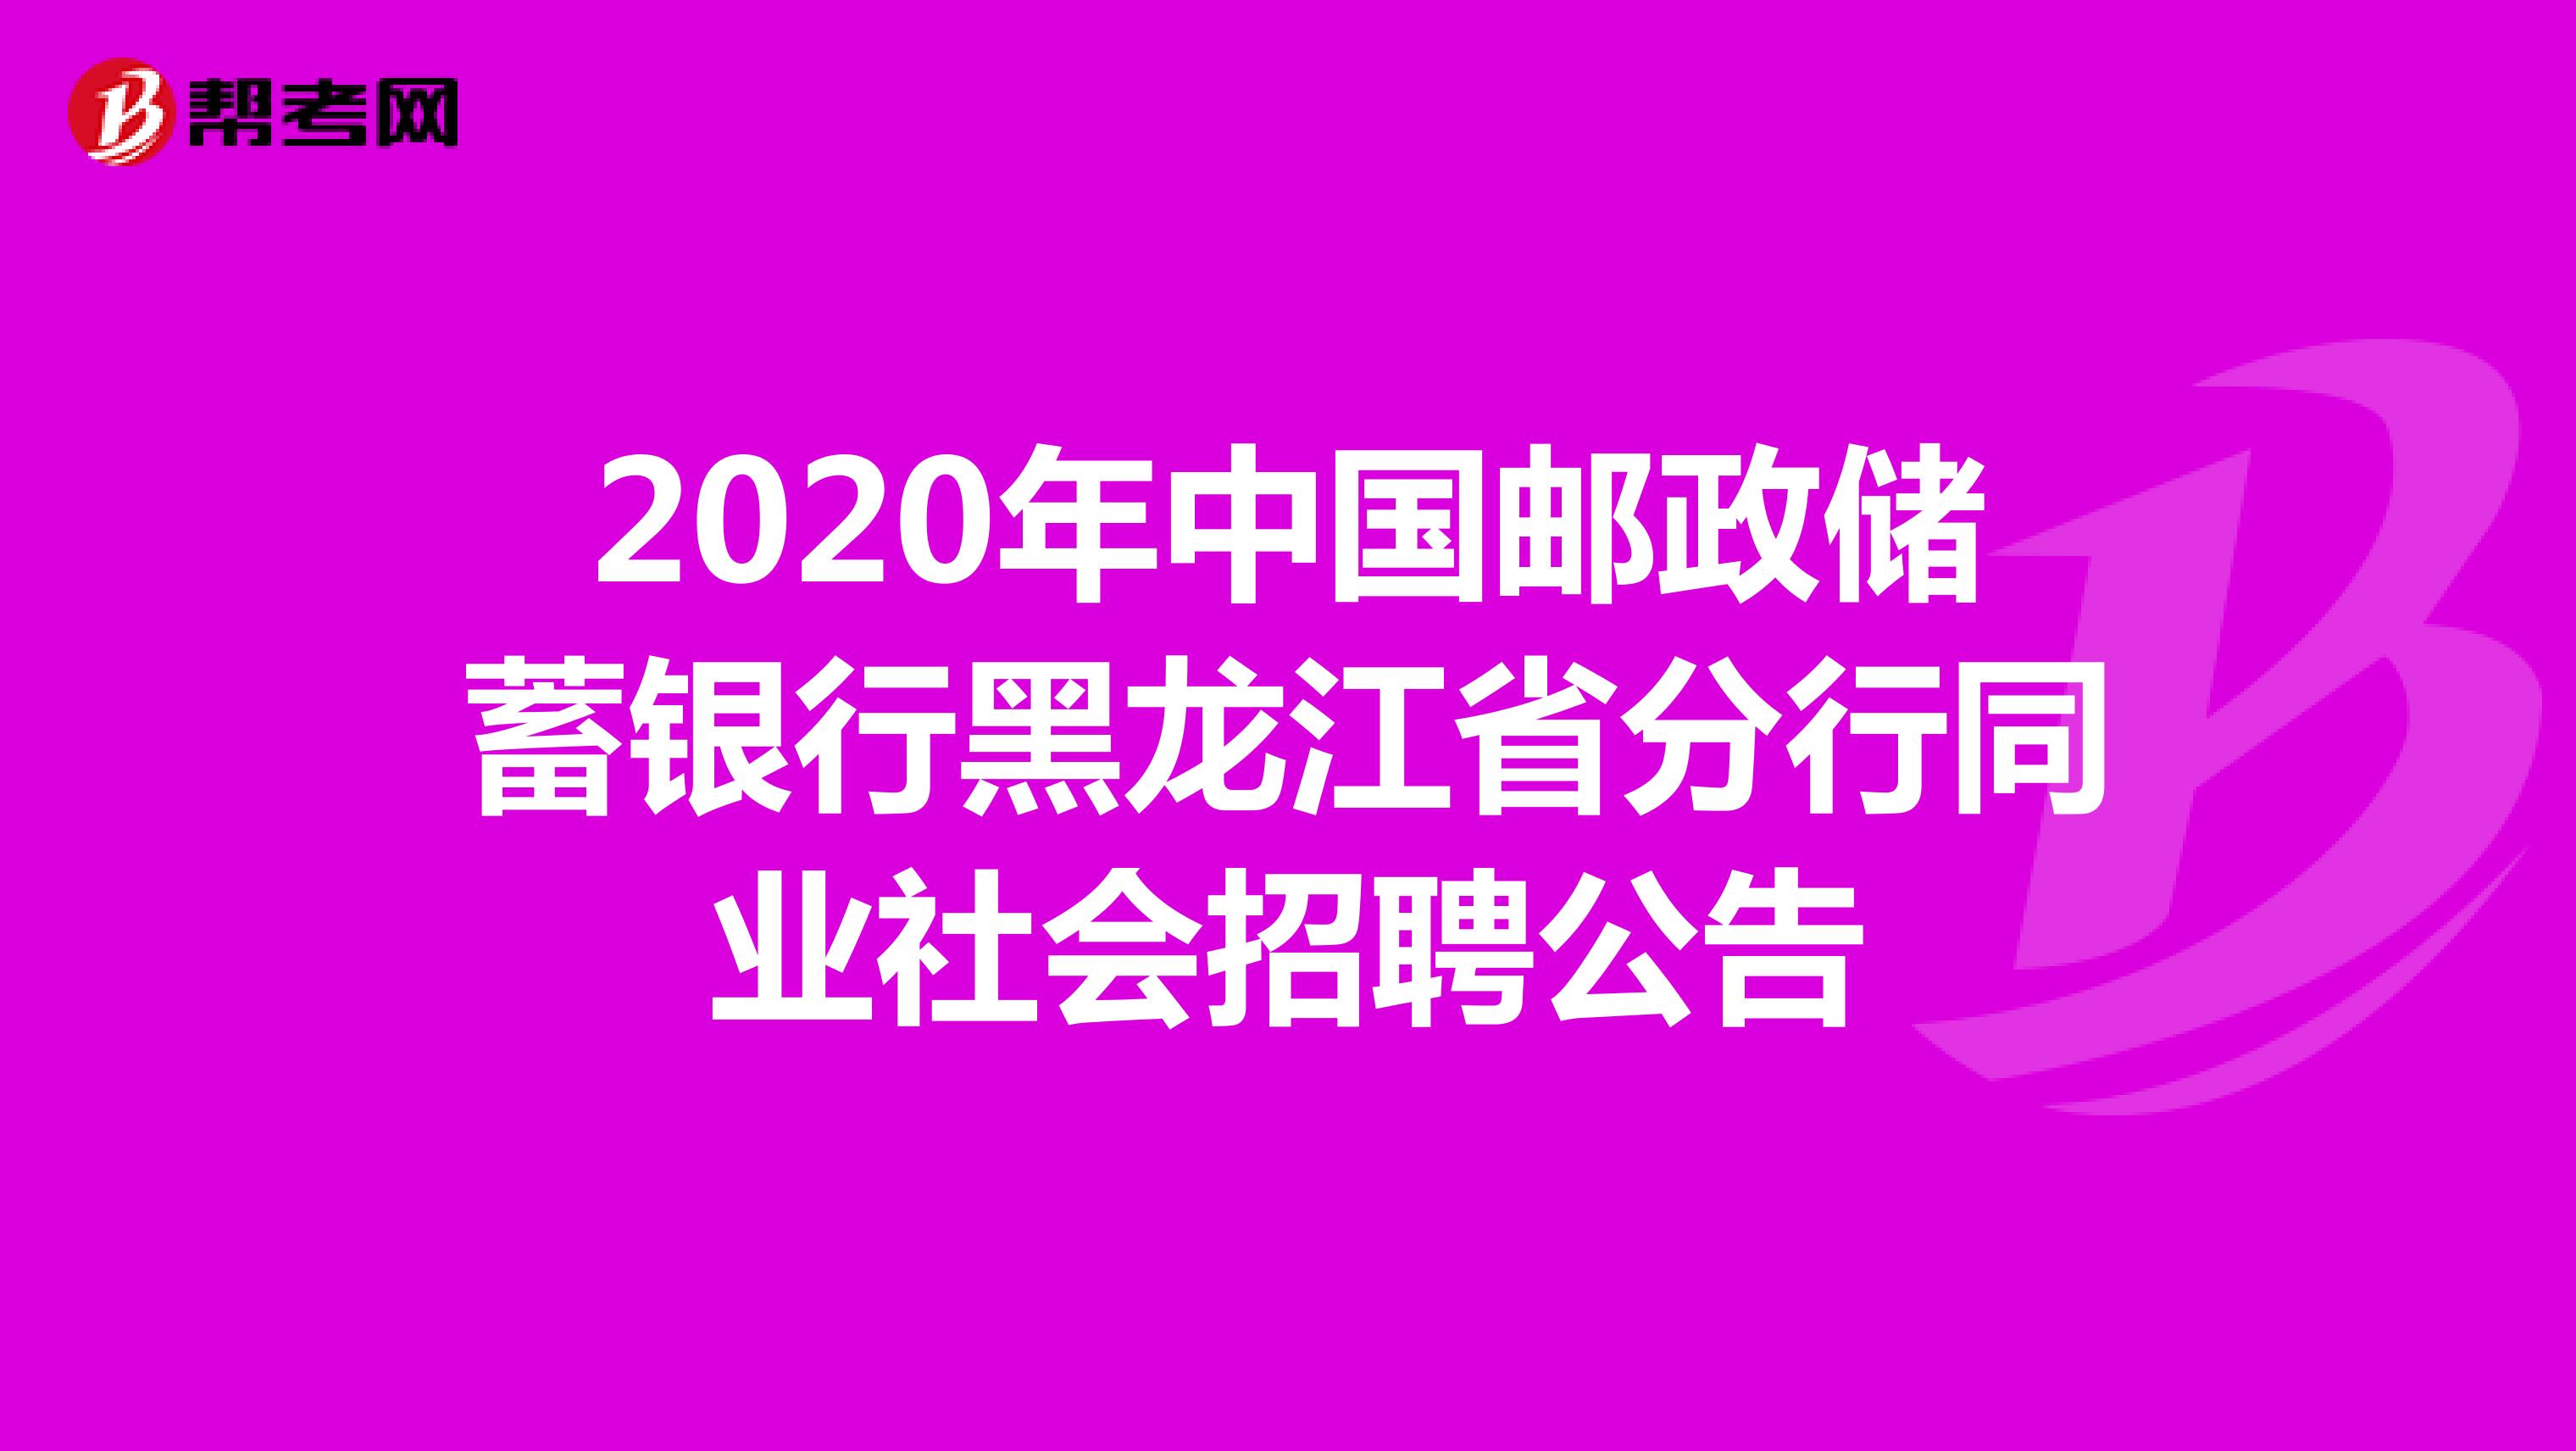 2020年中国邮政储蓄银行黑龙江省分行同业社会招聘公告